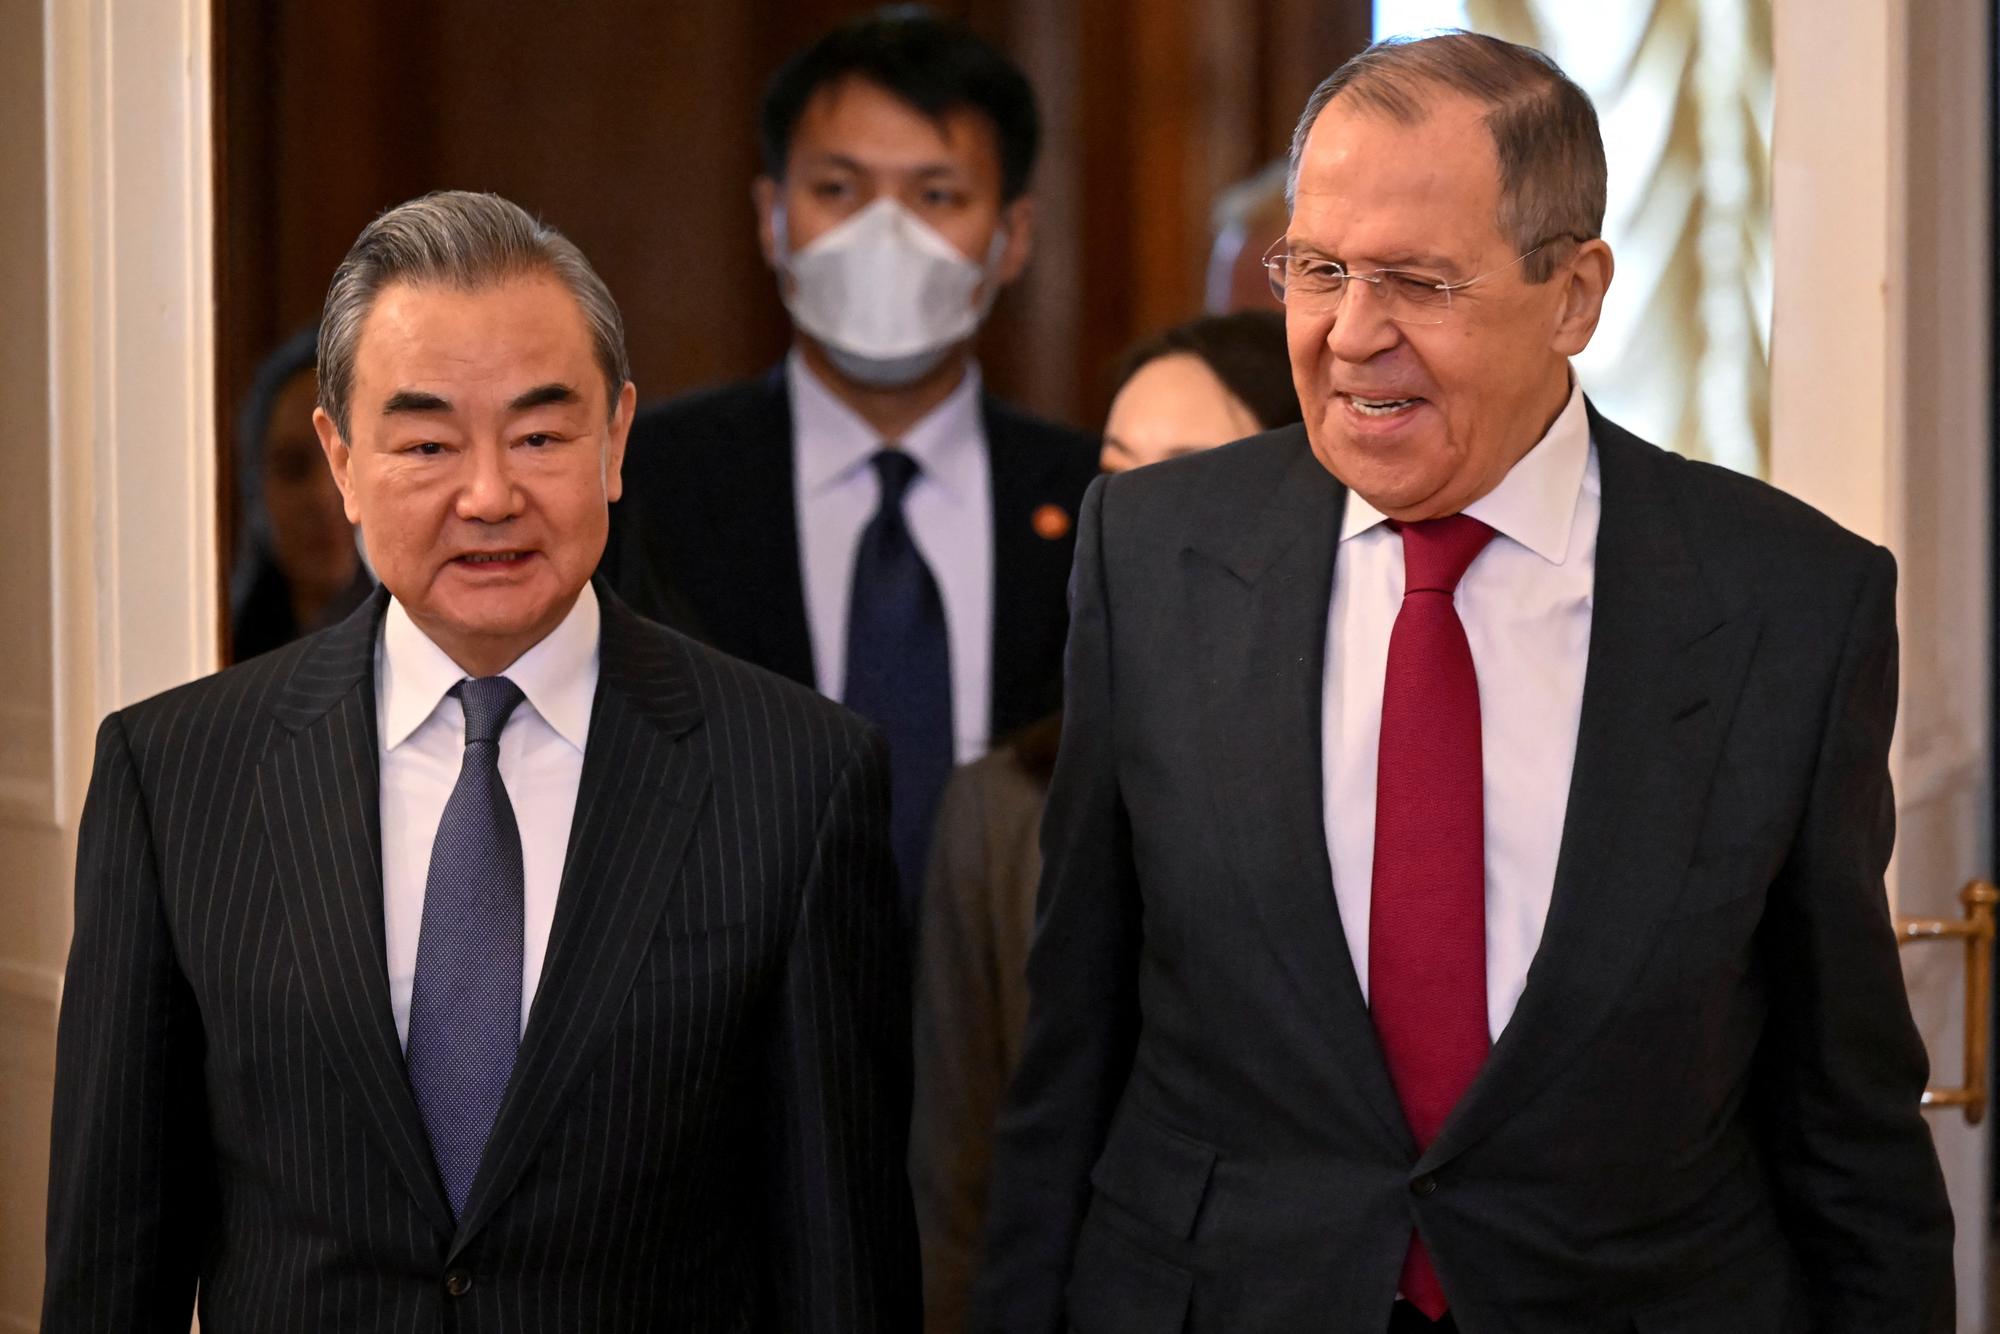 Le chef de la diplomatie chinoise Wang Yi a rencontré son homologue russe Sergueï Lavrov à Moscou le 22 février 2022. [REUTERS - Alexander Nemenov]